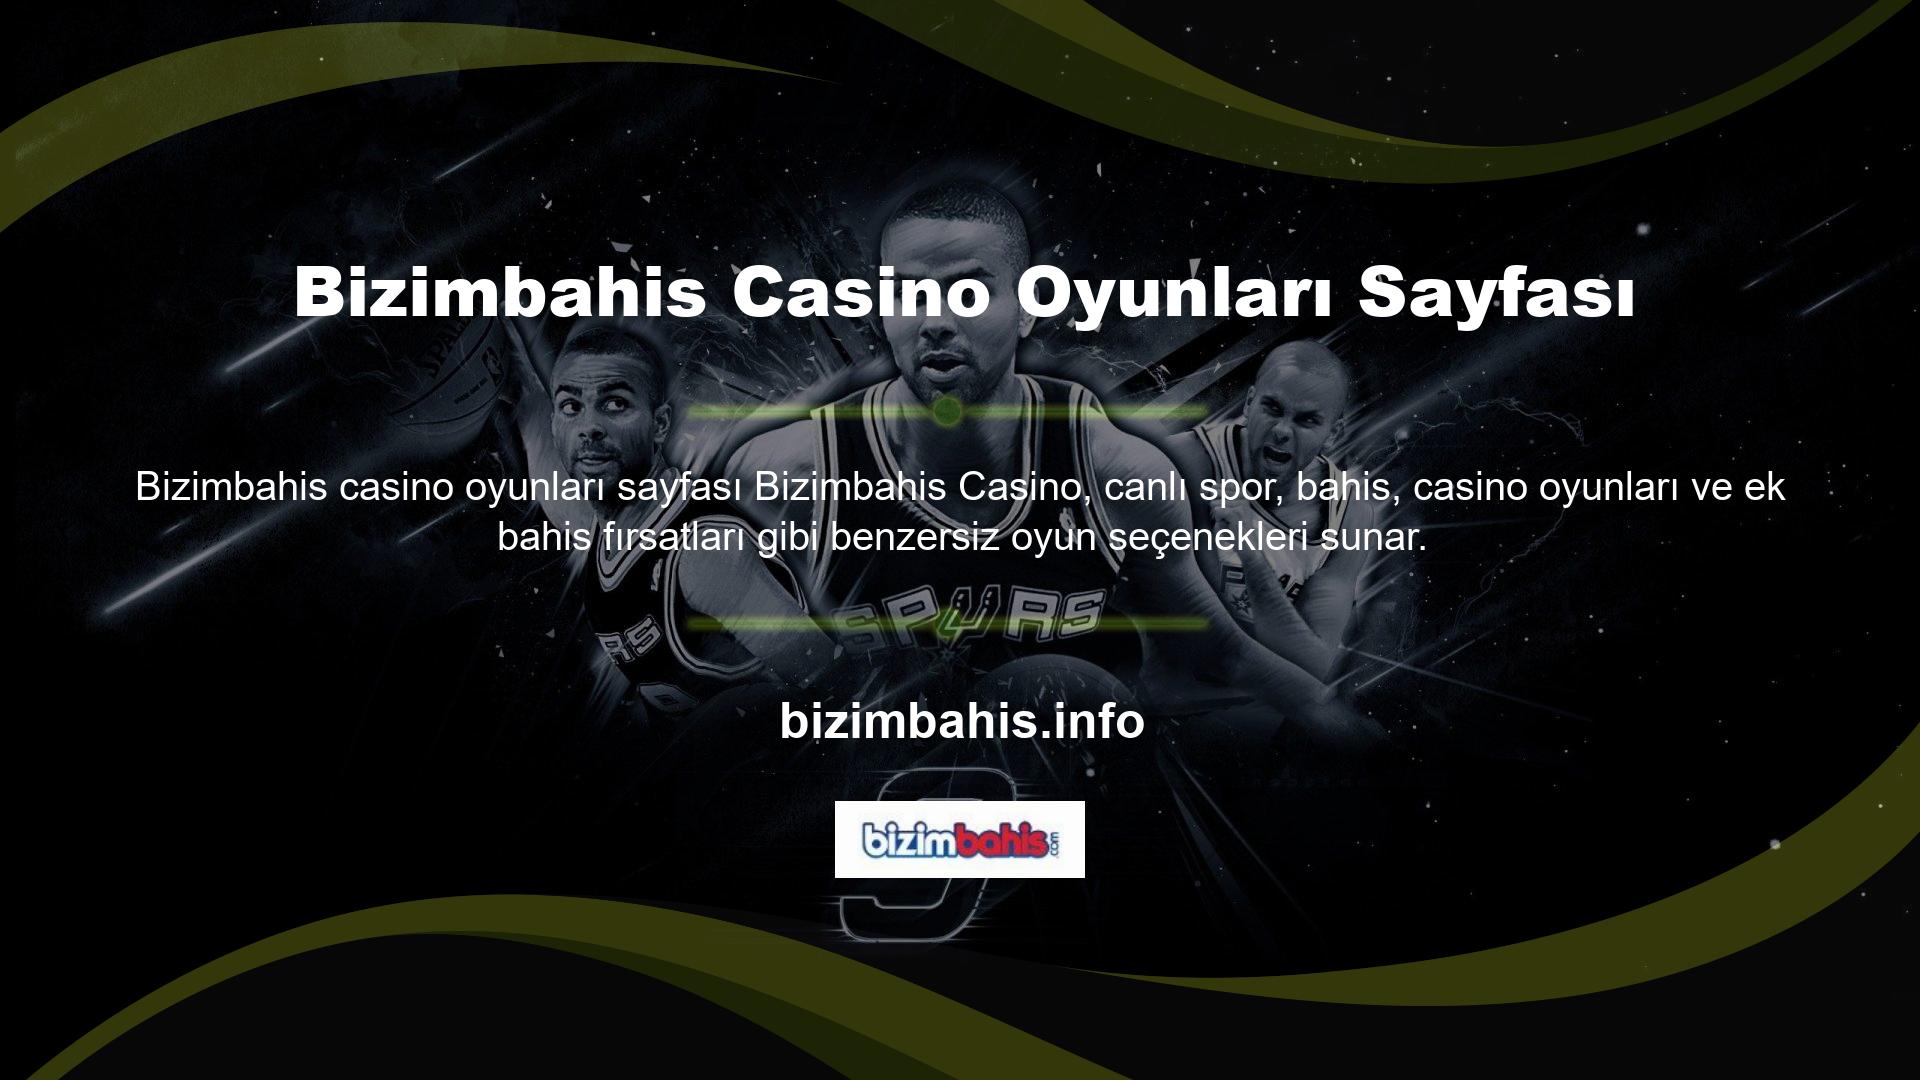 Bizimbahis casino oyunları sayfası, hızlı bahis oynamayı garantilemek için en iyi oranlara ve gelişmiş program özelliklerine sahiptir